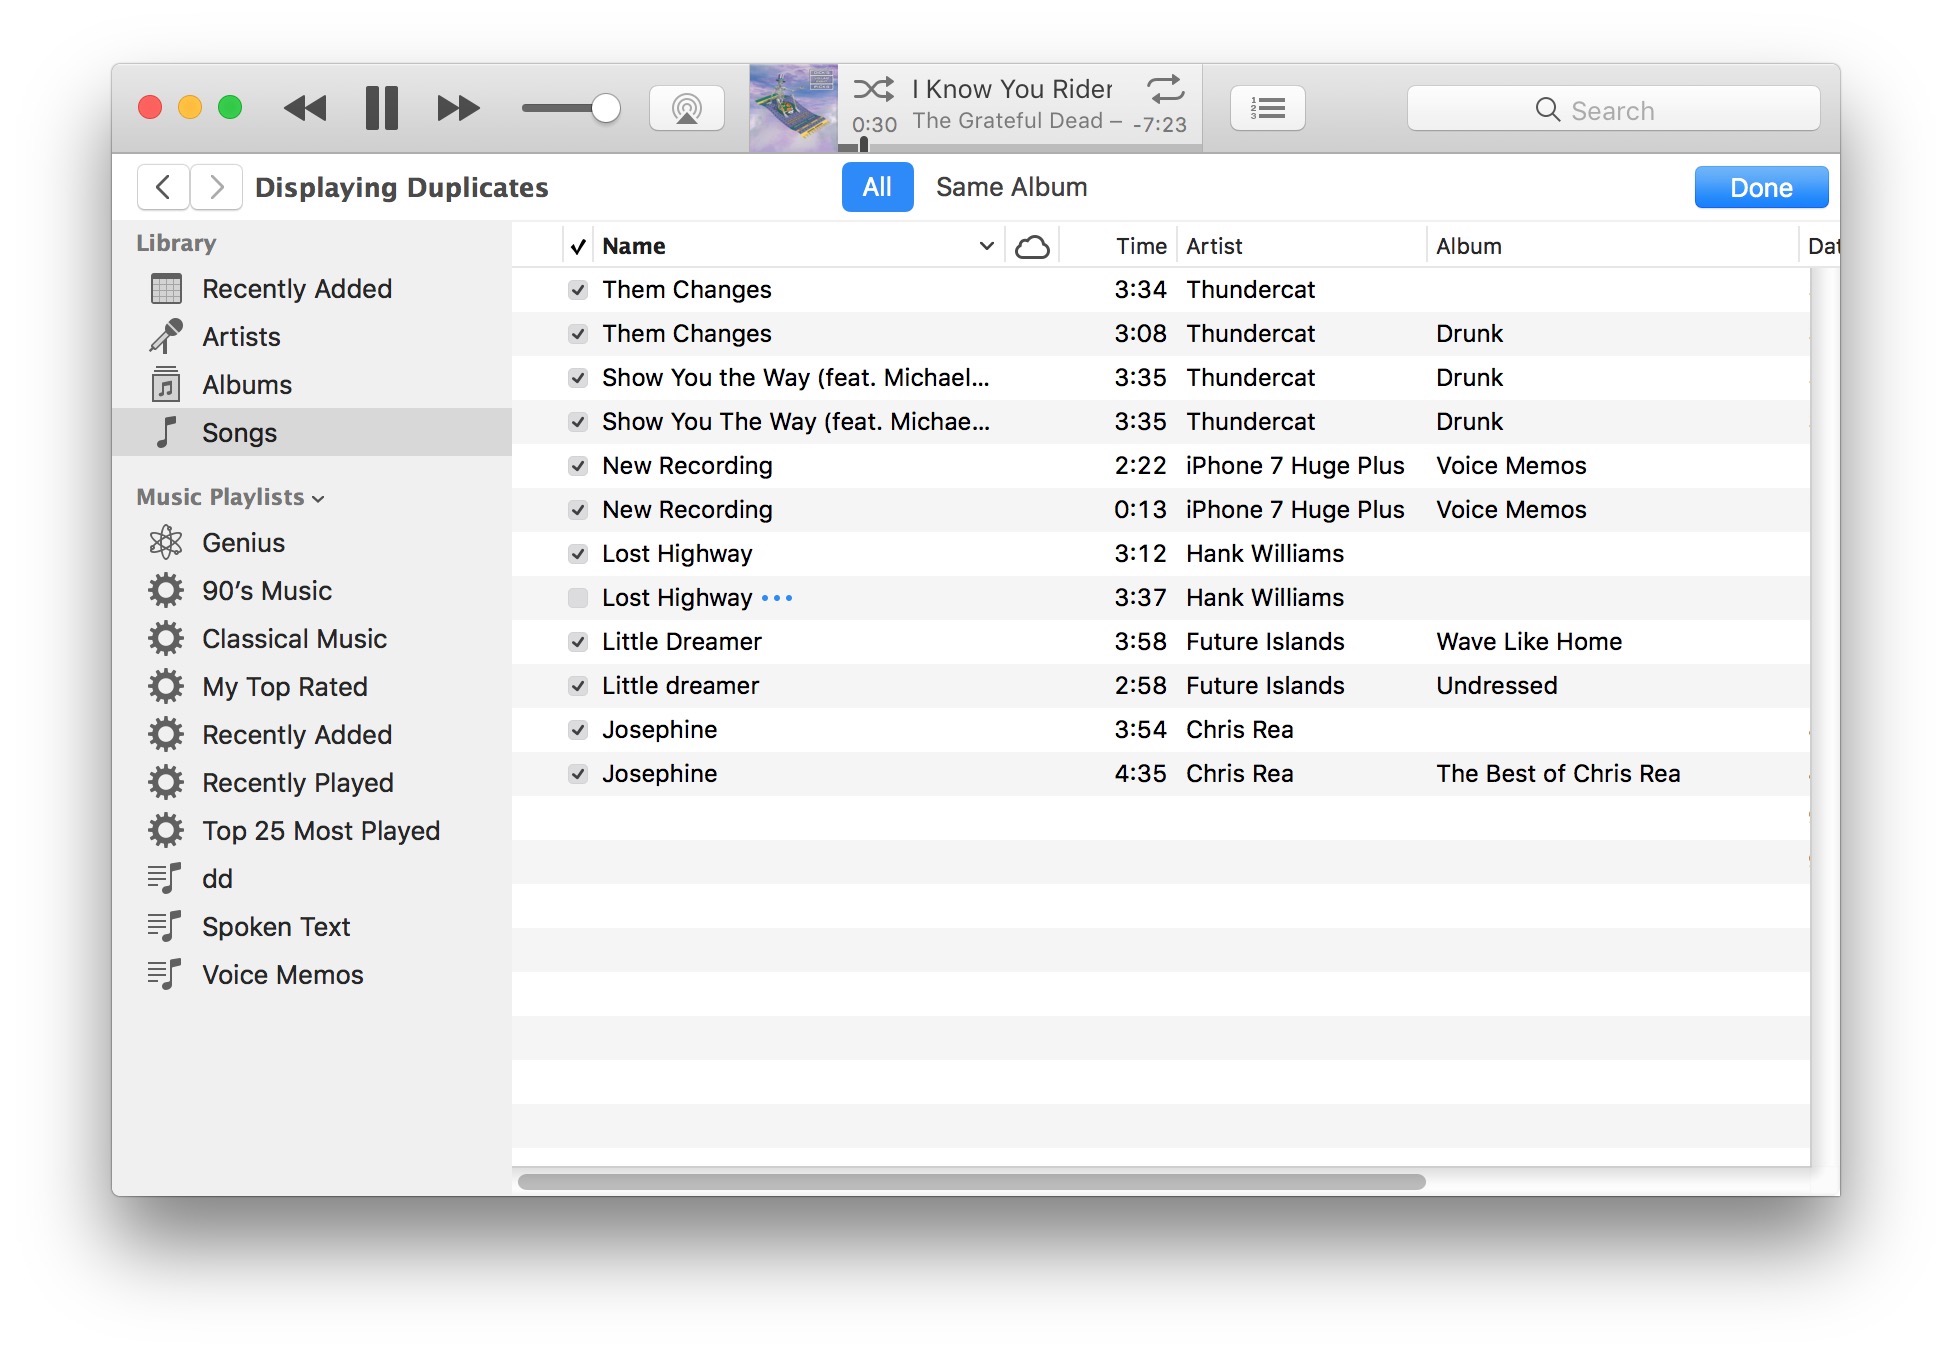 Lista de canciones potencialmente duplicadas encontradas en iTunes